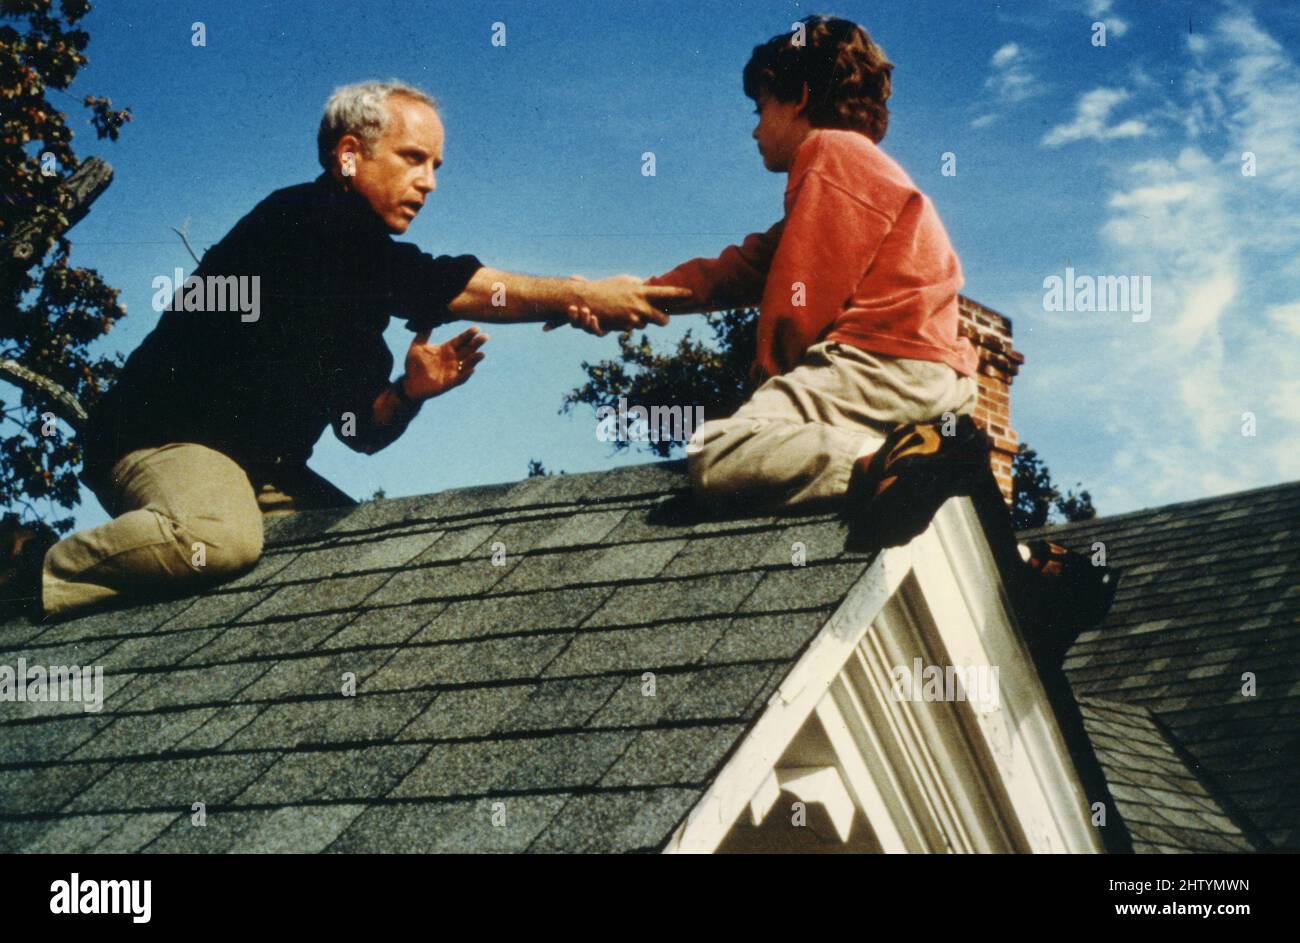 Schauspieler Richard Dreyfuss im Film Silent Fall, Deutschland 1994 Stockfoto